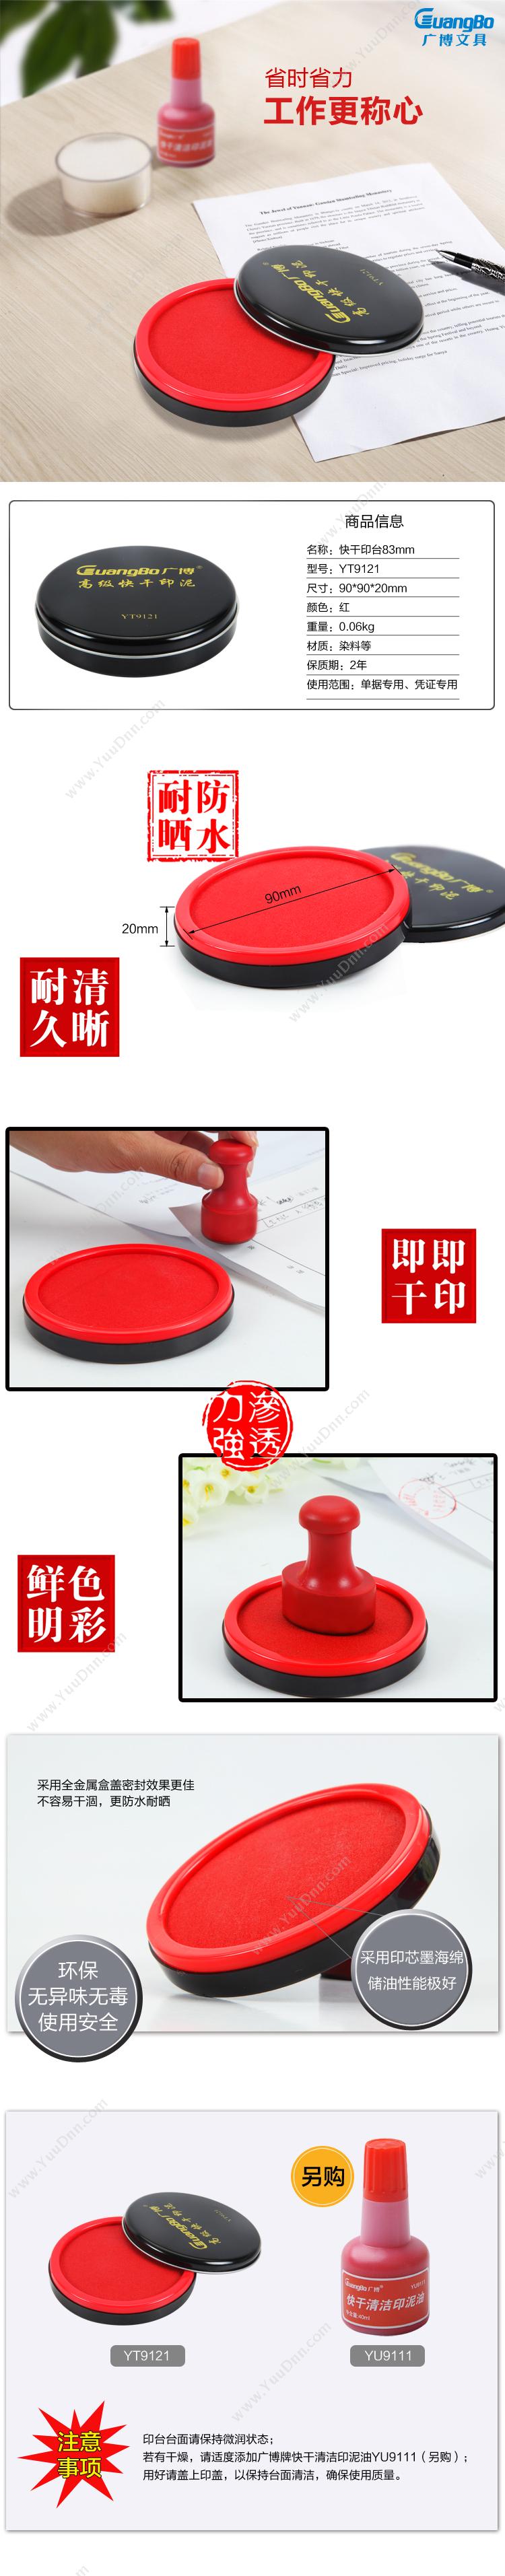 广博 GuangBo YT9121 快干(红)(直径83mm) 印泥